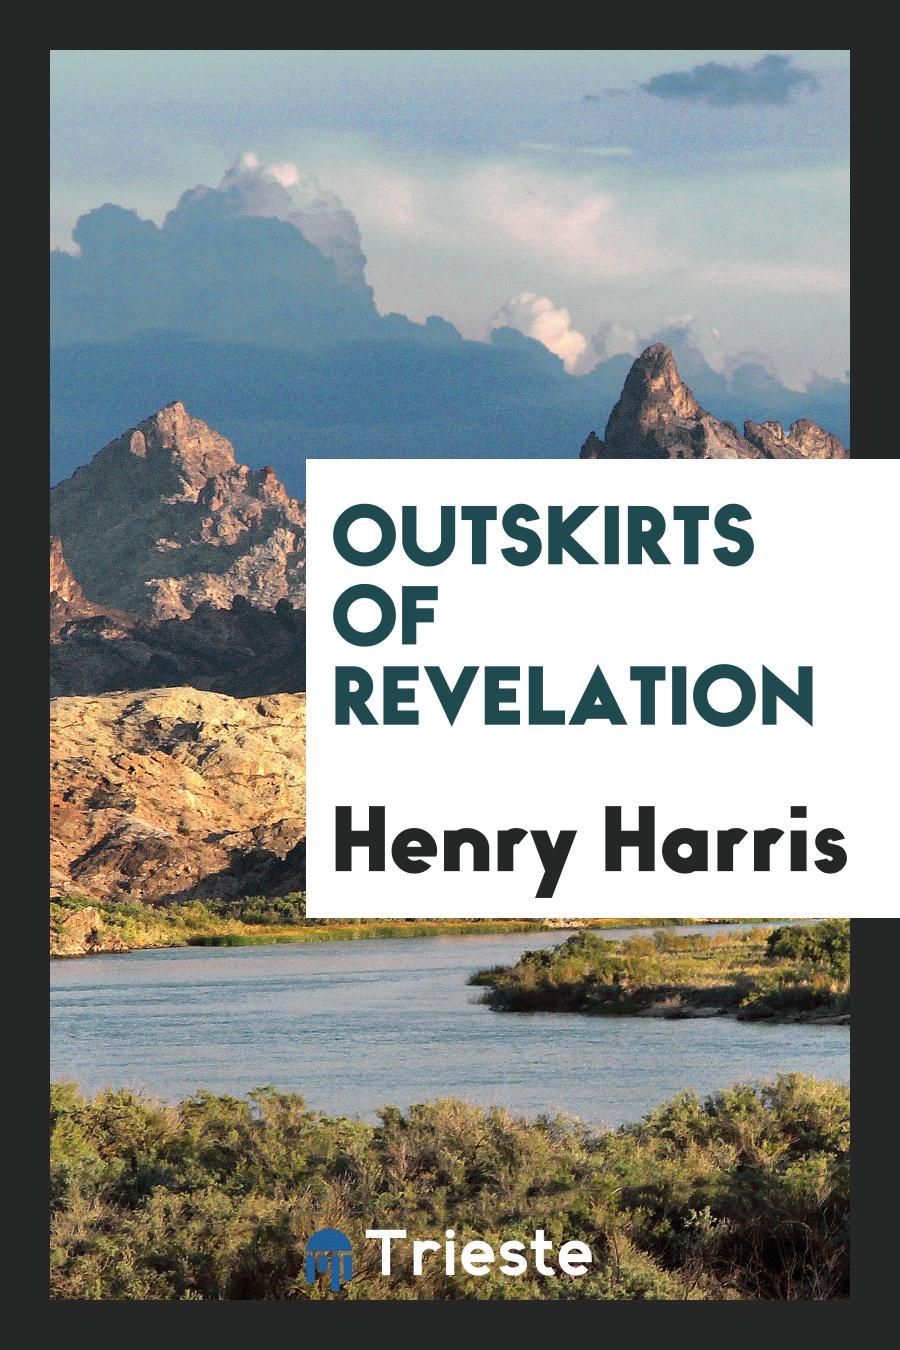 Outskirts of revelation